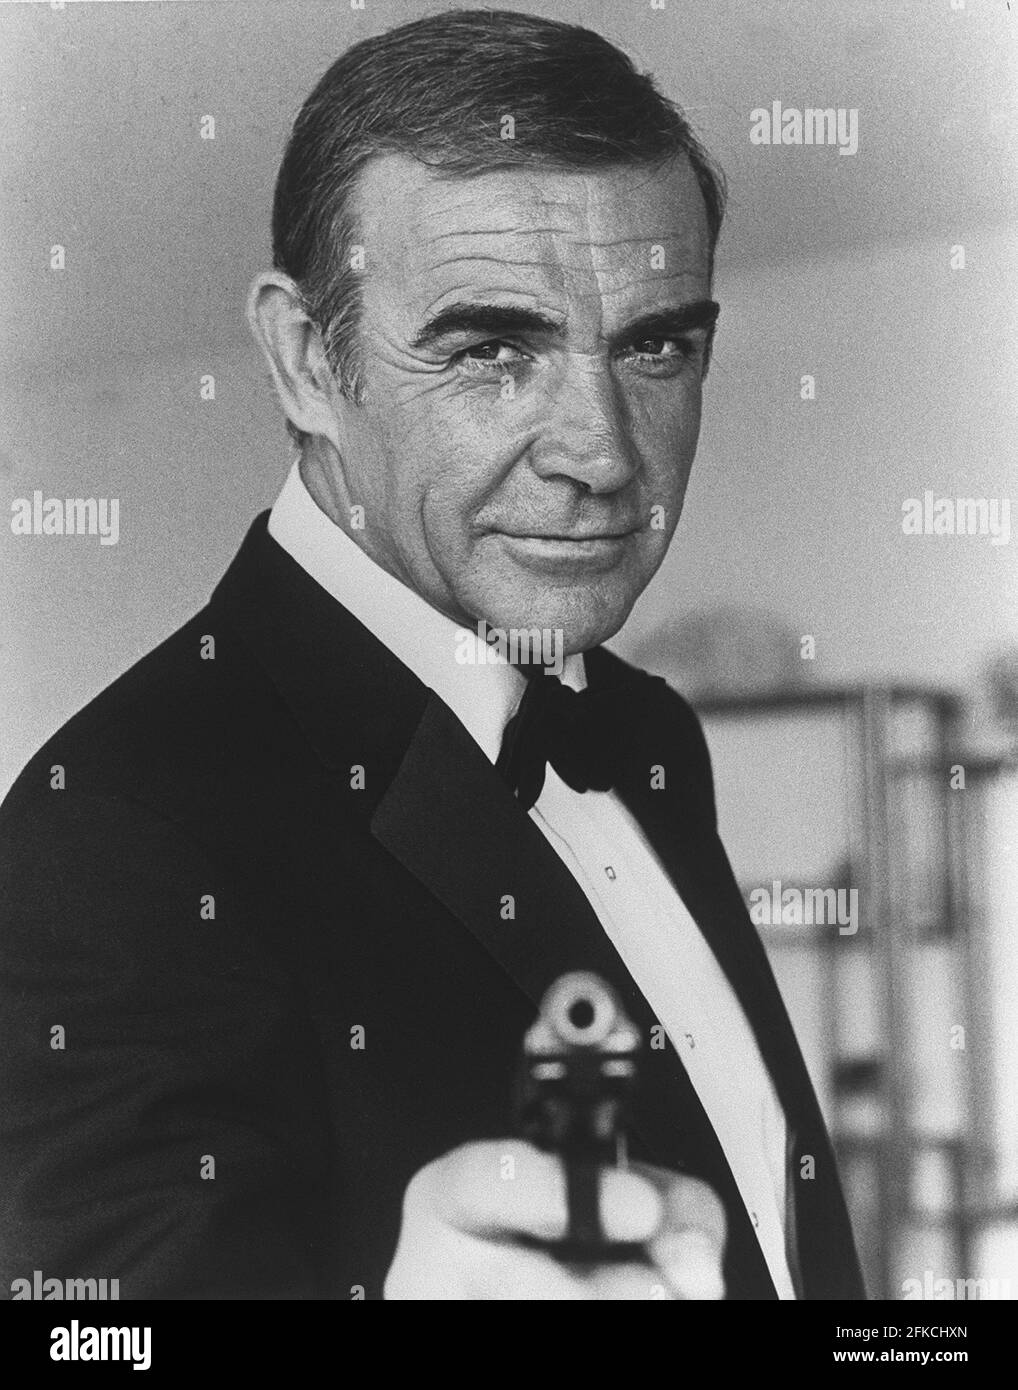 Foto dell'attore scozzese Sean Connery scattata nel 1982 a Nizza durante la realizzazione del film 'Never Say, Never Again' di US Irving Kerschner. Sean Connery sarà per la settima volta agente di servizio segreto James Bond 007 Foto Stock